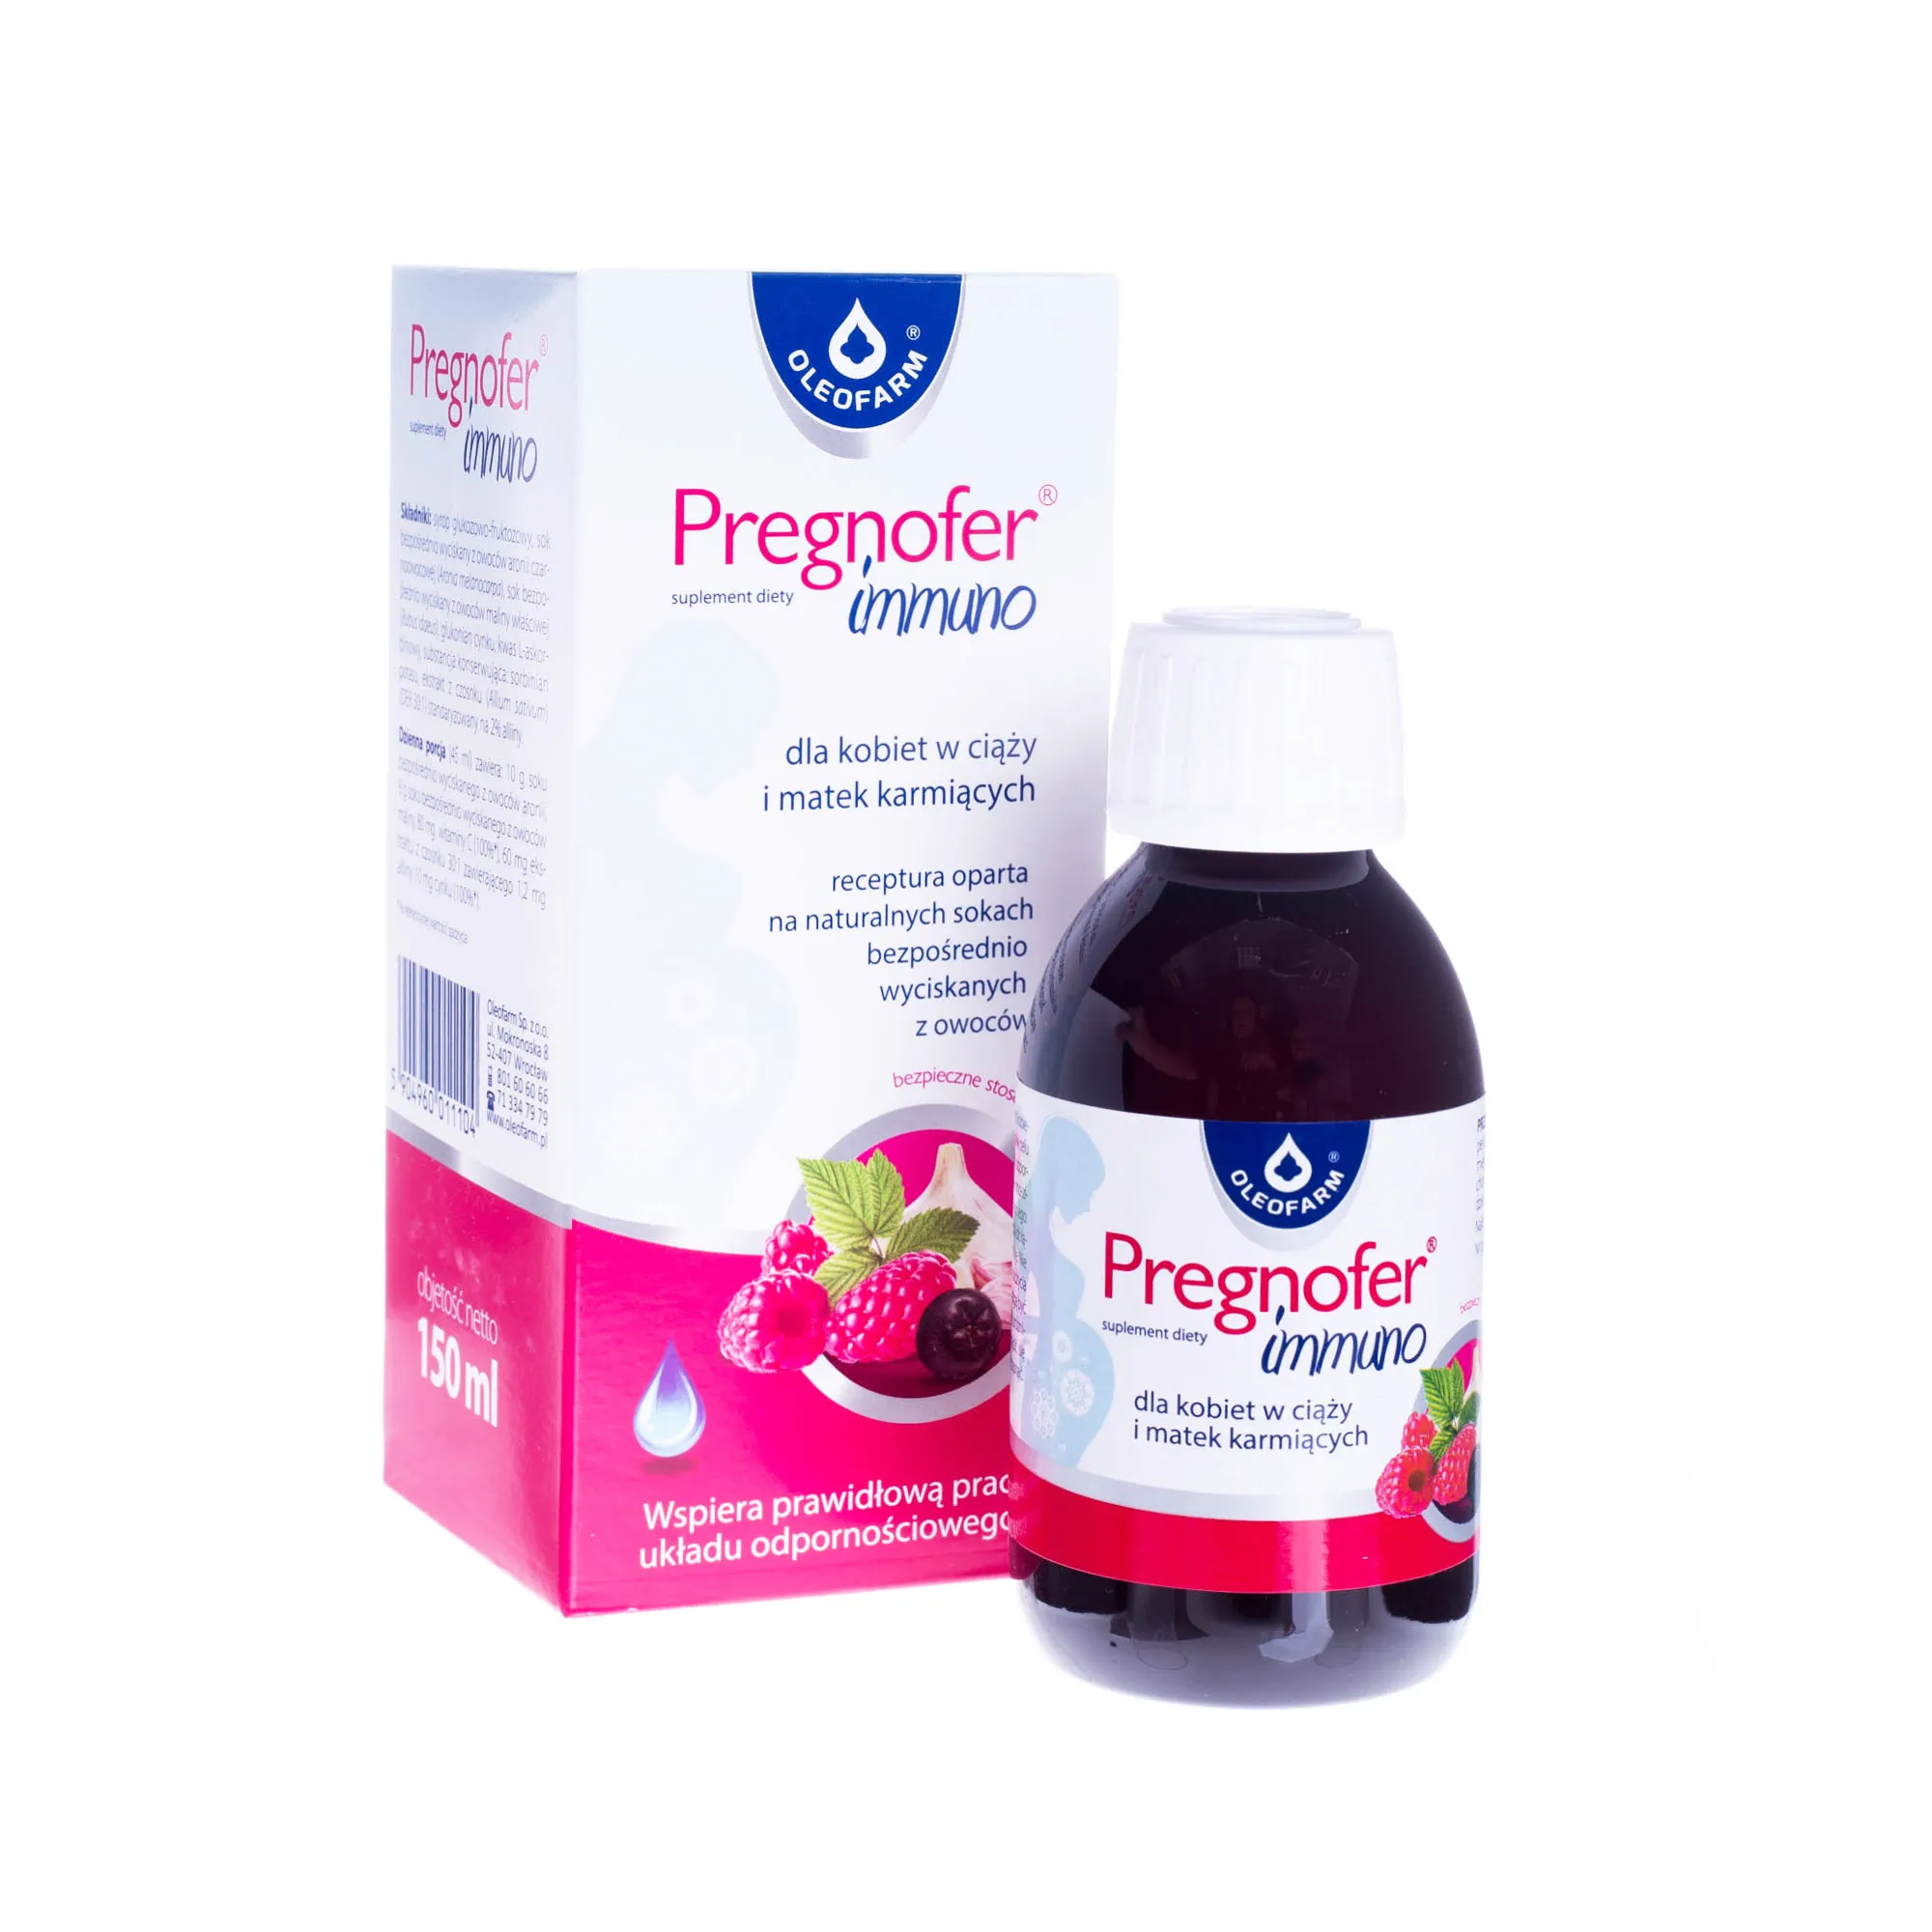 Pregnofer immuno, suplement diety dla kobiet w ciąży i matek karmiących, 150 ml